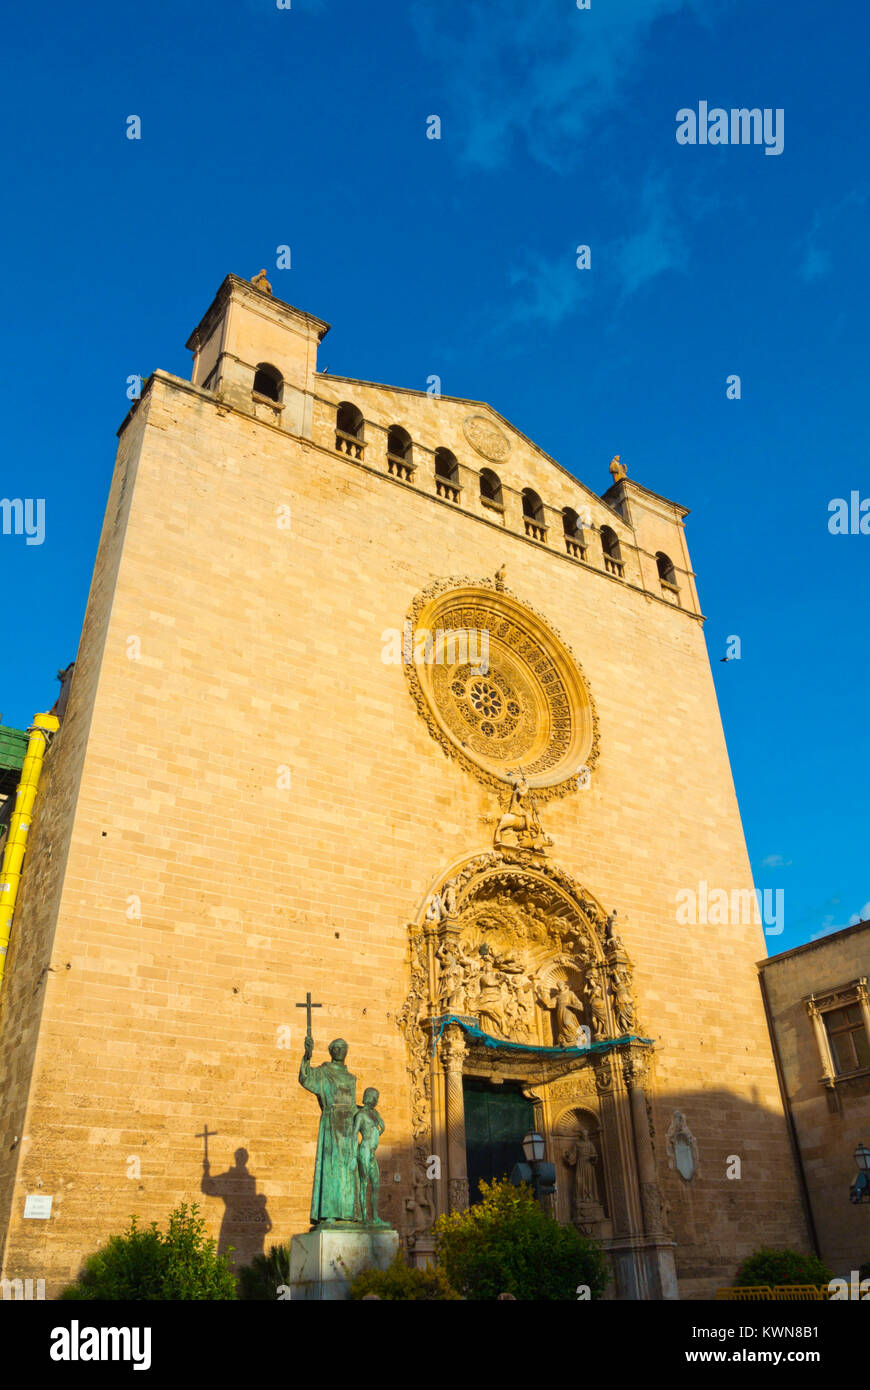 Sant Francesc de Palma, l'église de Sant Francesc, vieille ville, Palma, Majorque, îles Baléares, Espagne Banque D'Images